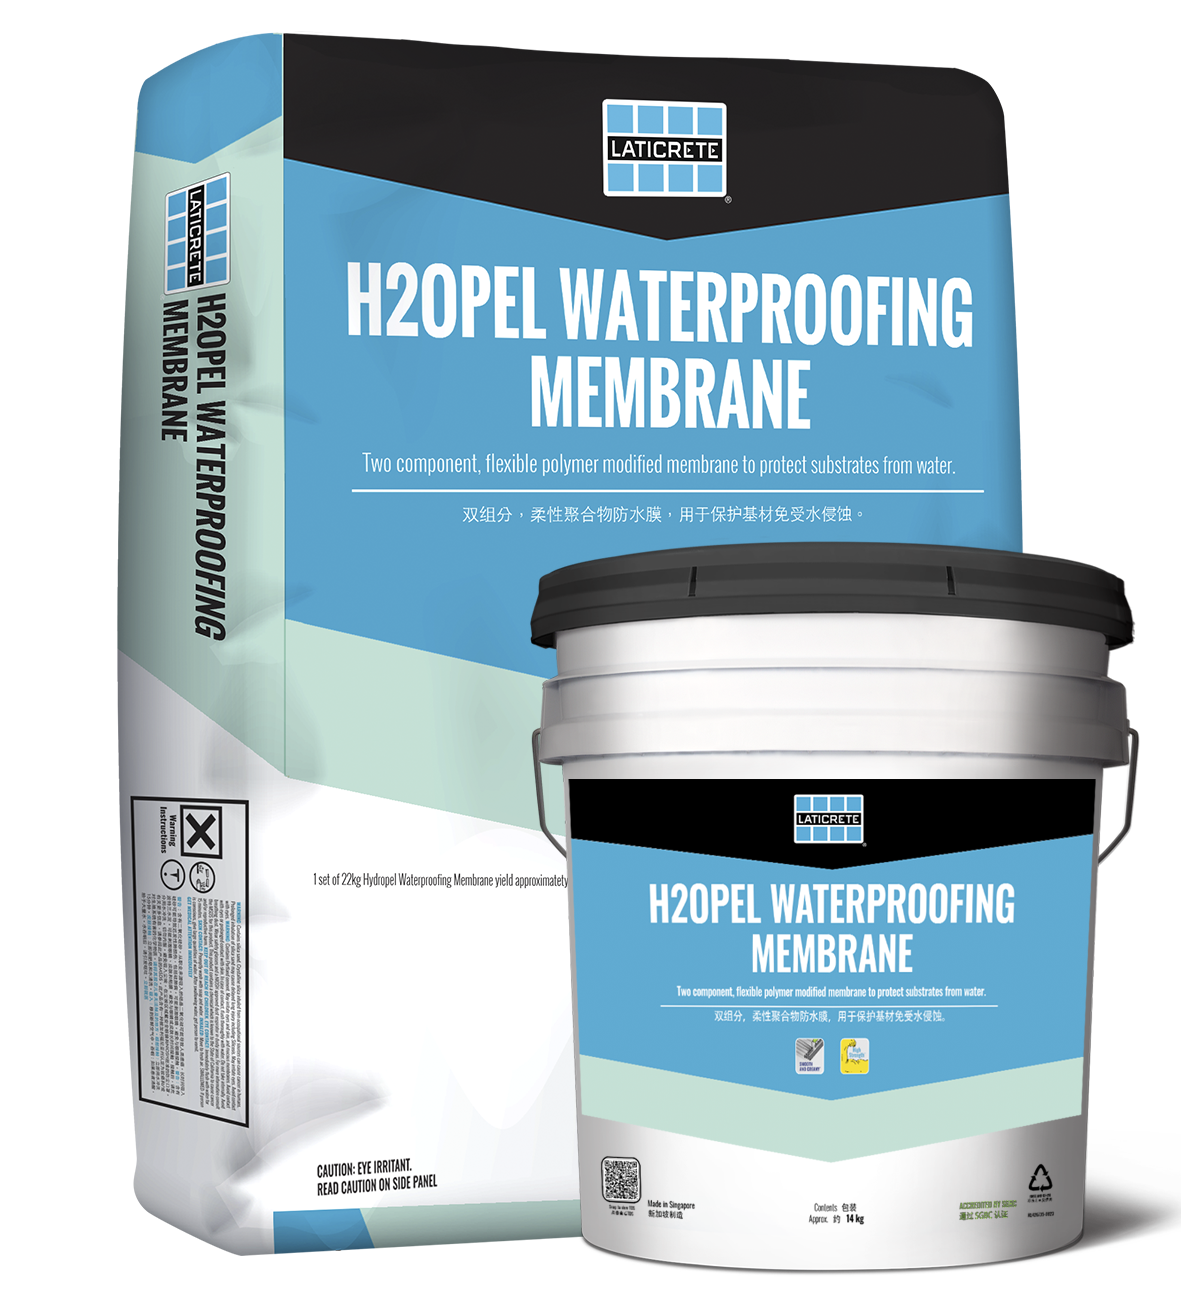 H2Opel Waterproofing Membrane